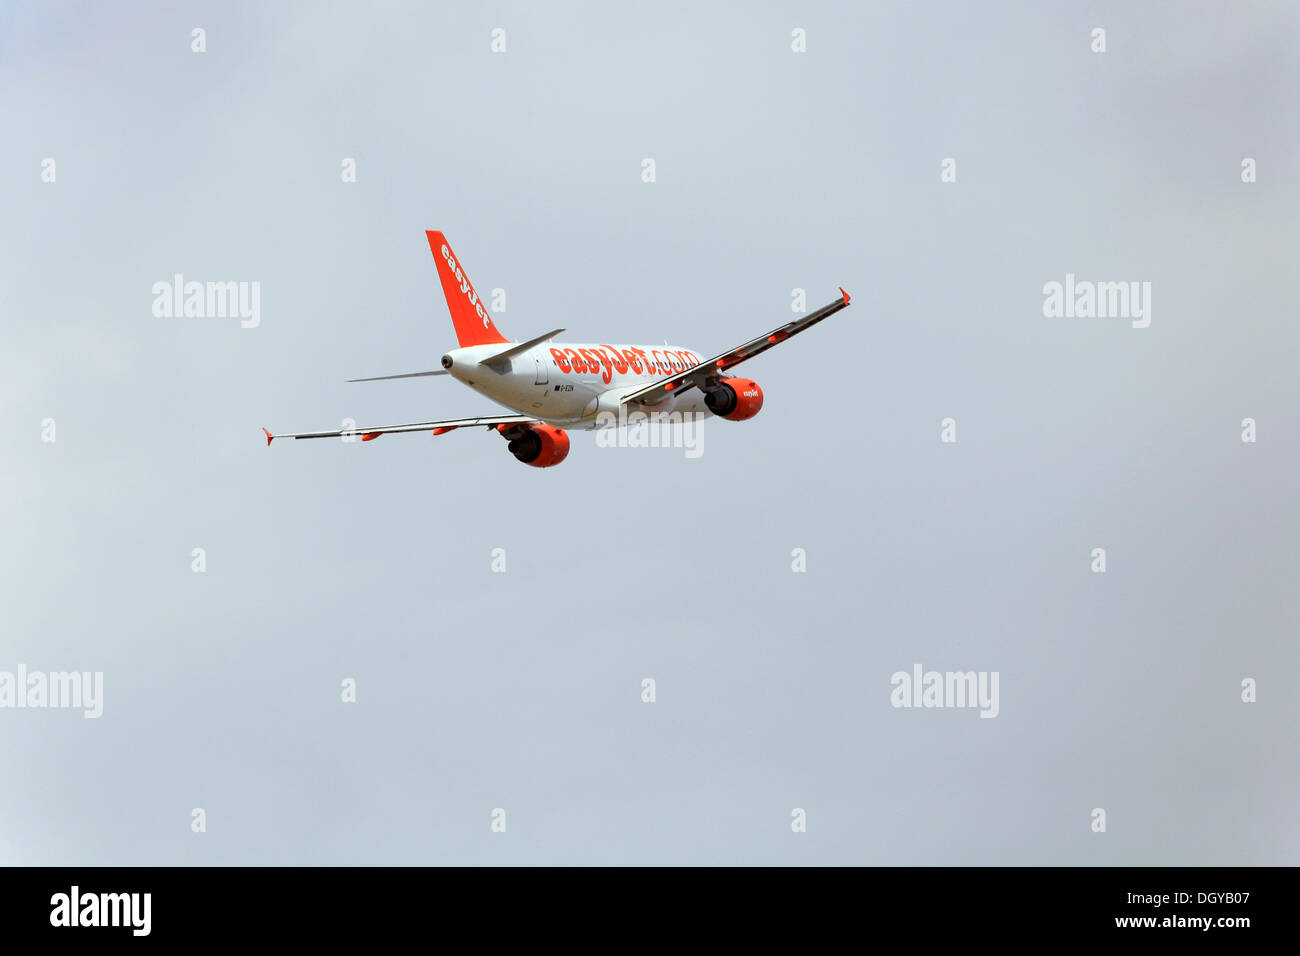 Passeggeri aerei Airbus A319 della compagnia aerea low-cost Easyjet, durante la salita Foto Stock